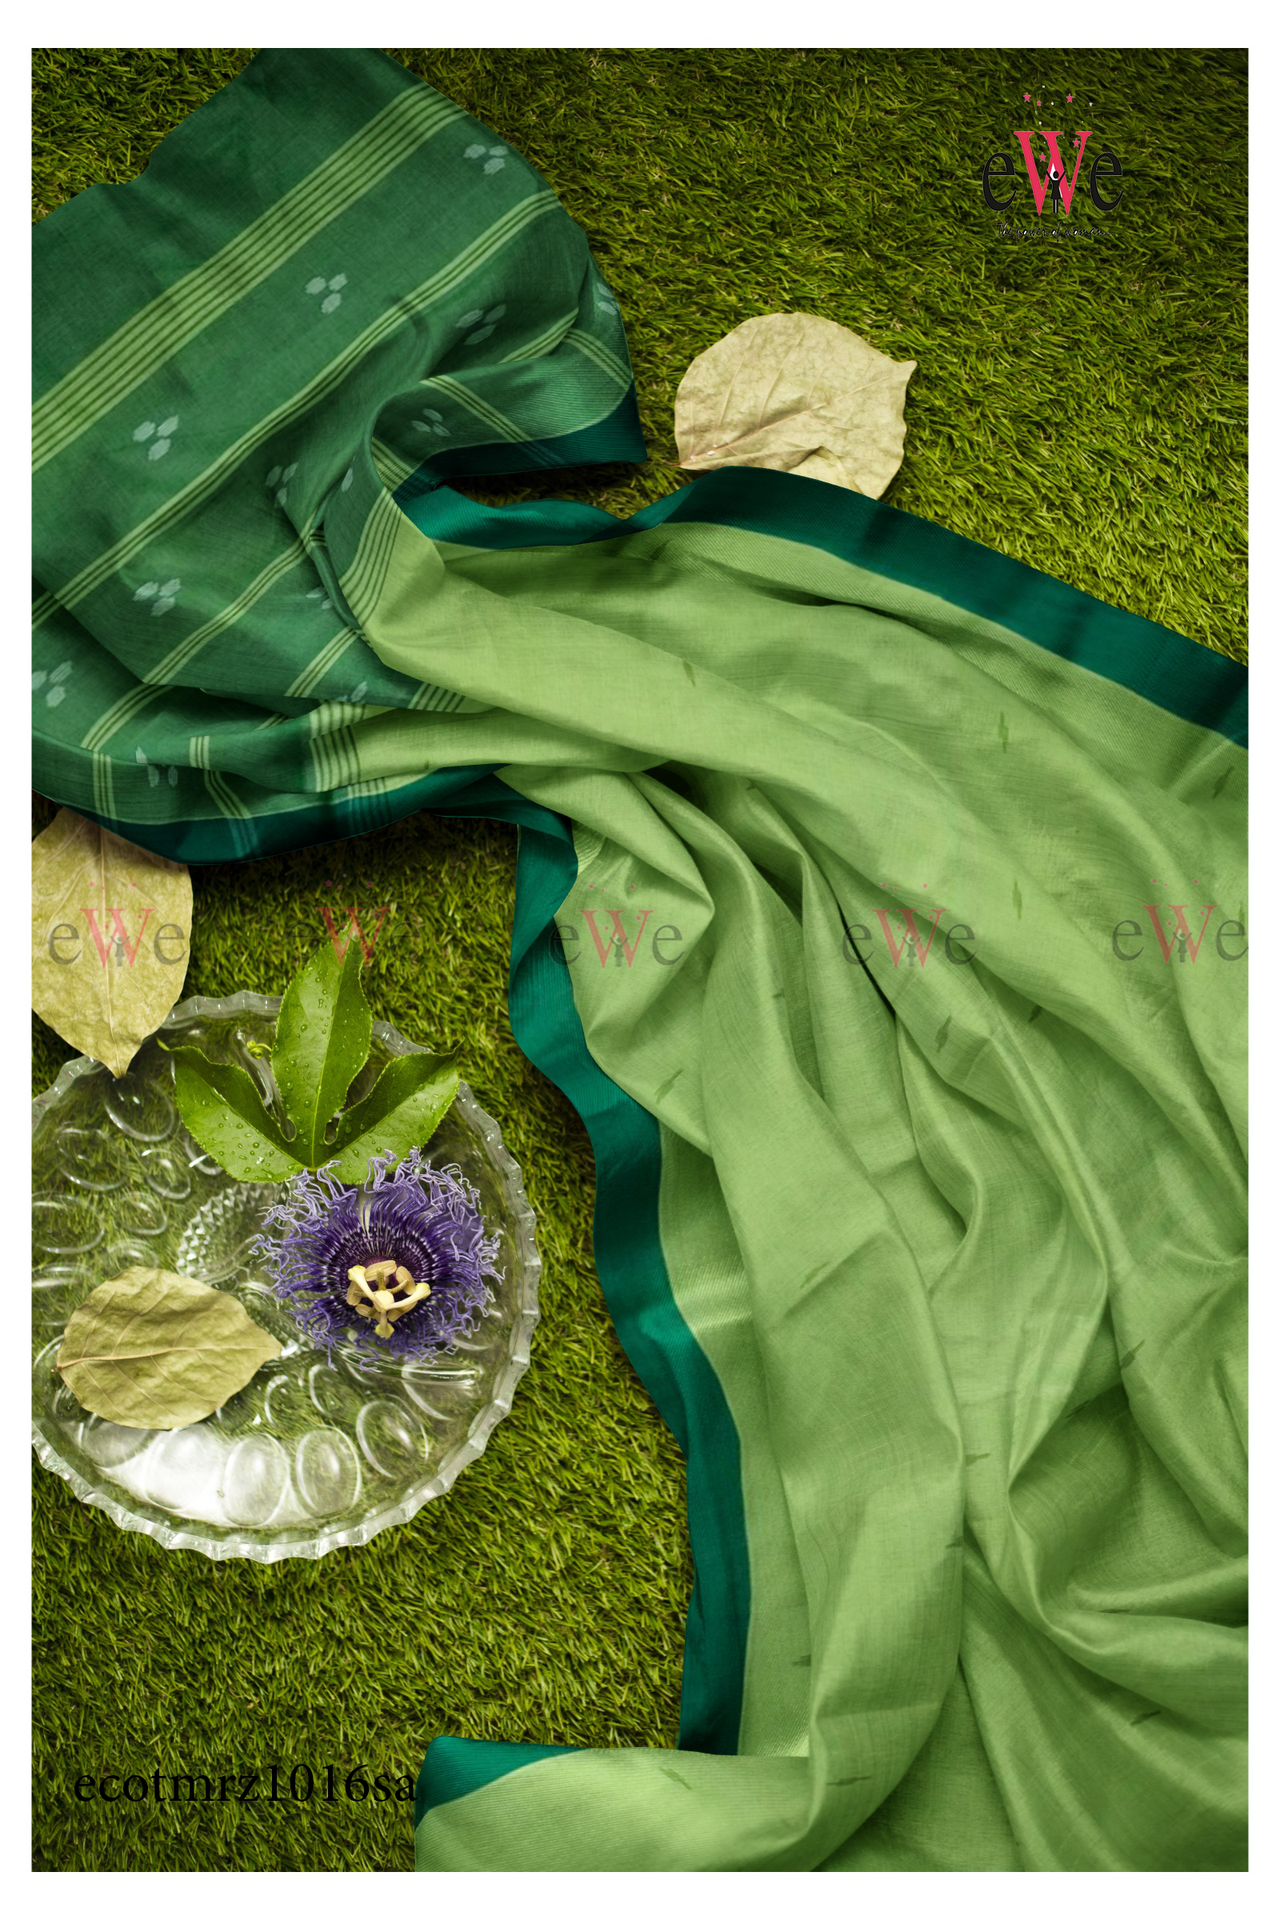 Sheen Green Handspun Handwoven Handloom Saree